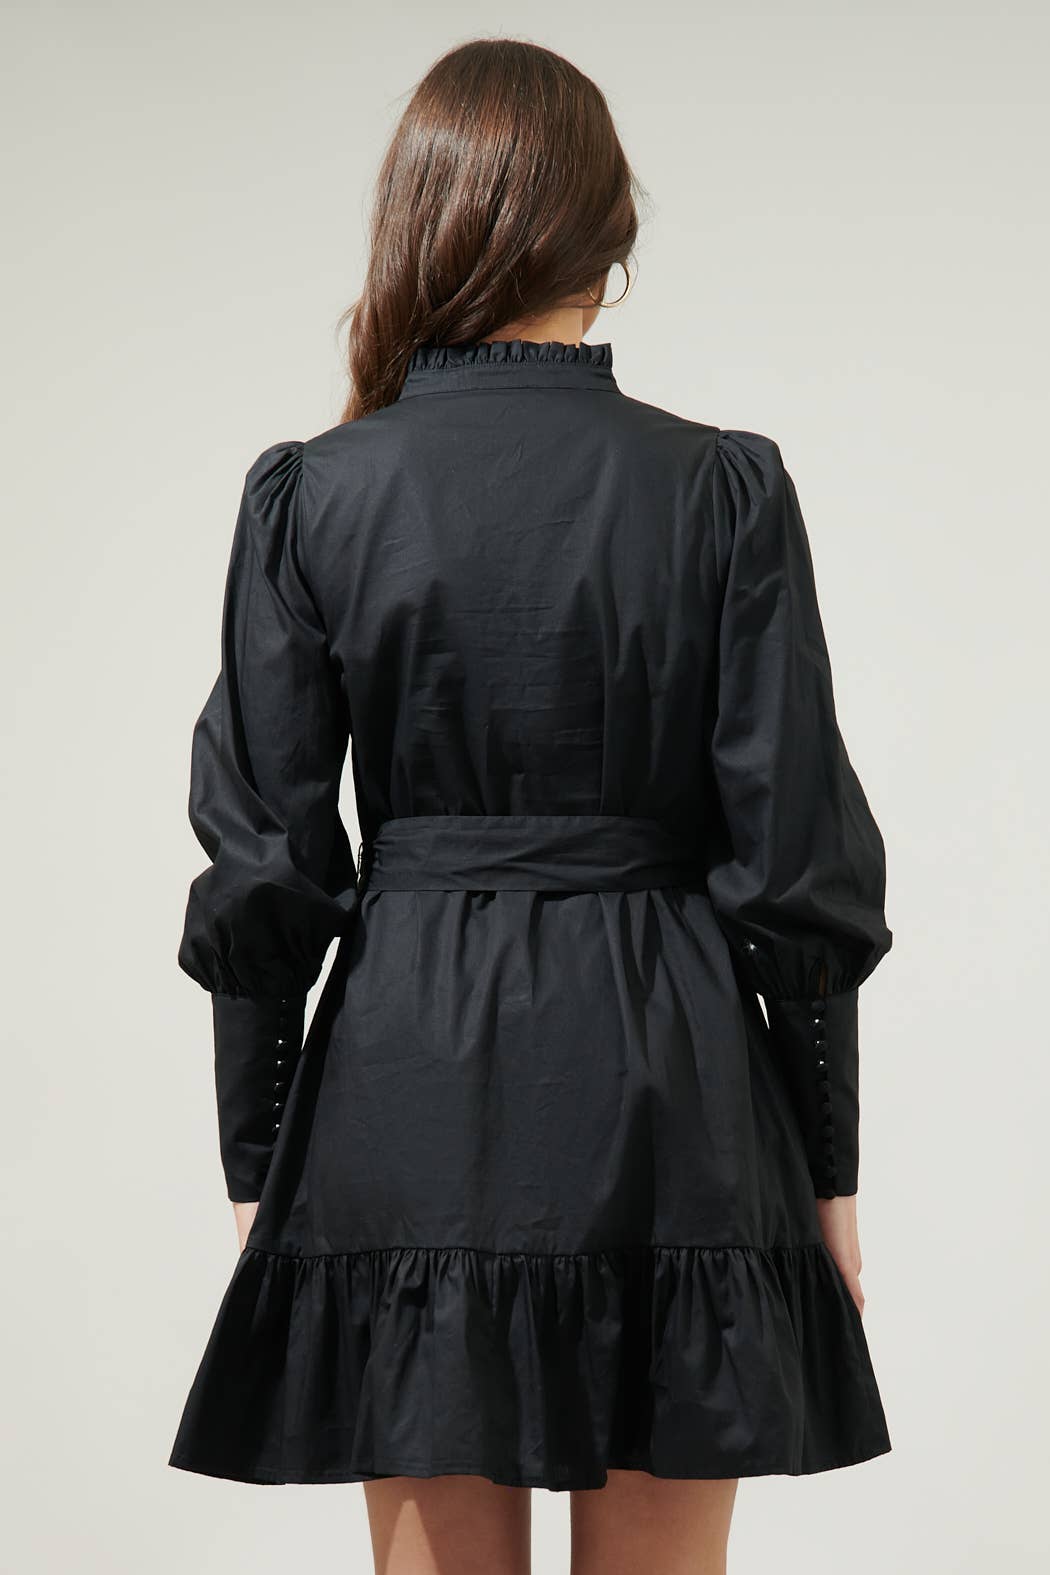 Beacher Pintuck Shift Dress: Black / XS